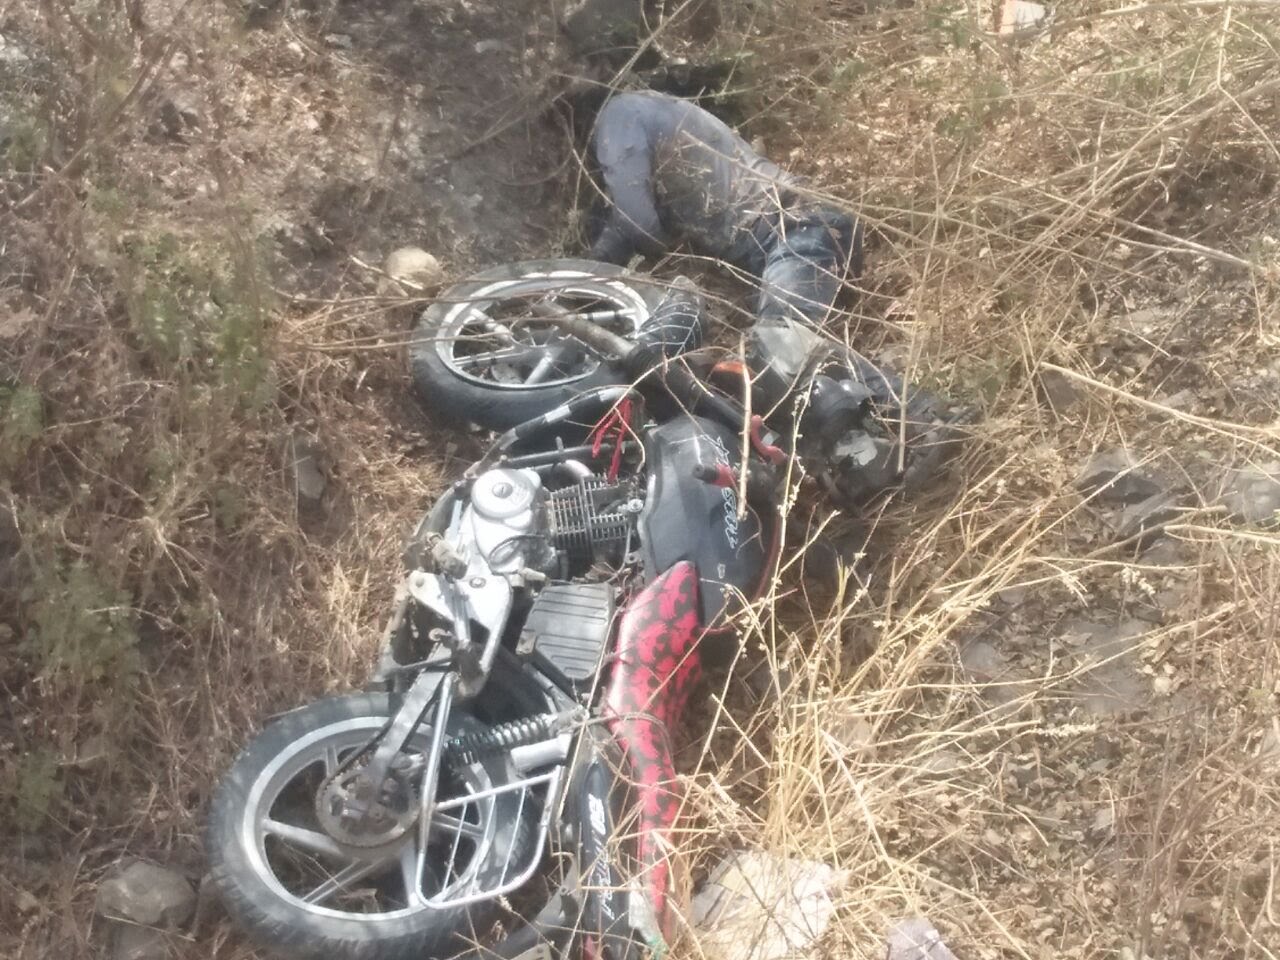 मोटरसाइकिल अनियंत्रित होकर गिरी खाई में, 1 की मौत, 1 घायल | New India Times